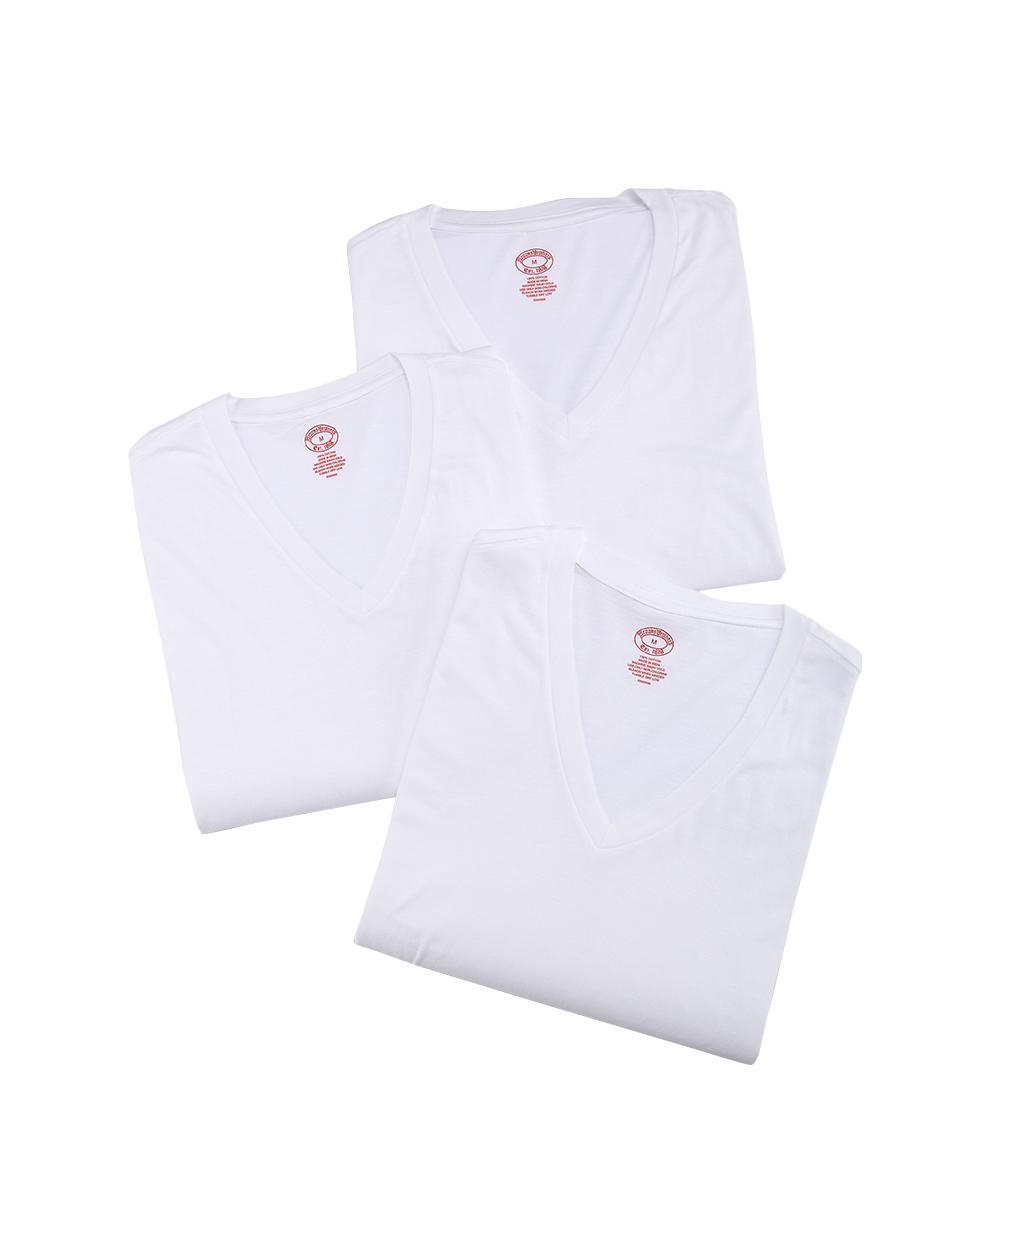 코튼 브이넥 티셔츠 3팩 (화이트)